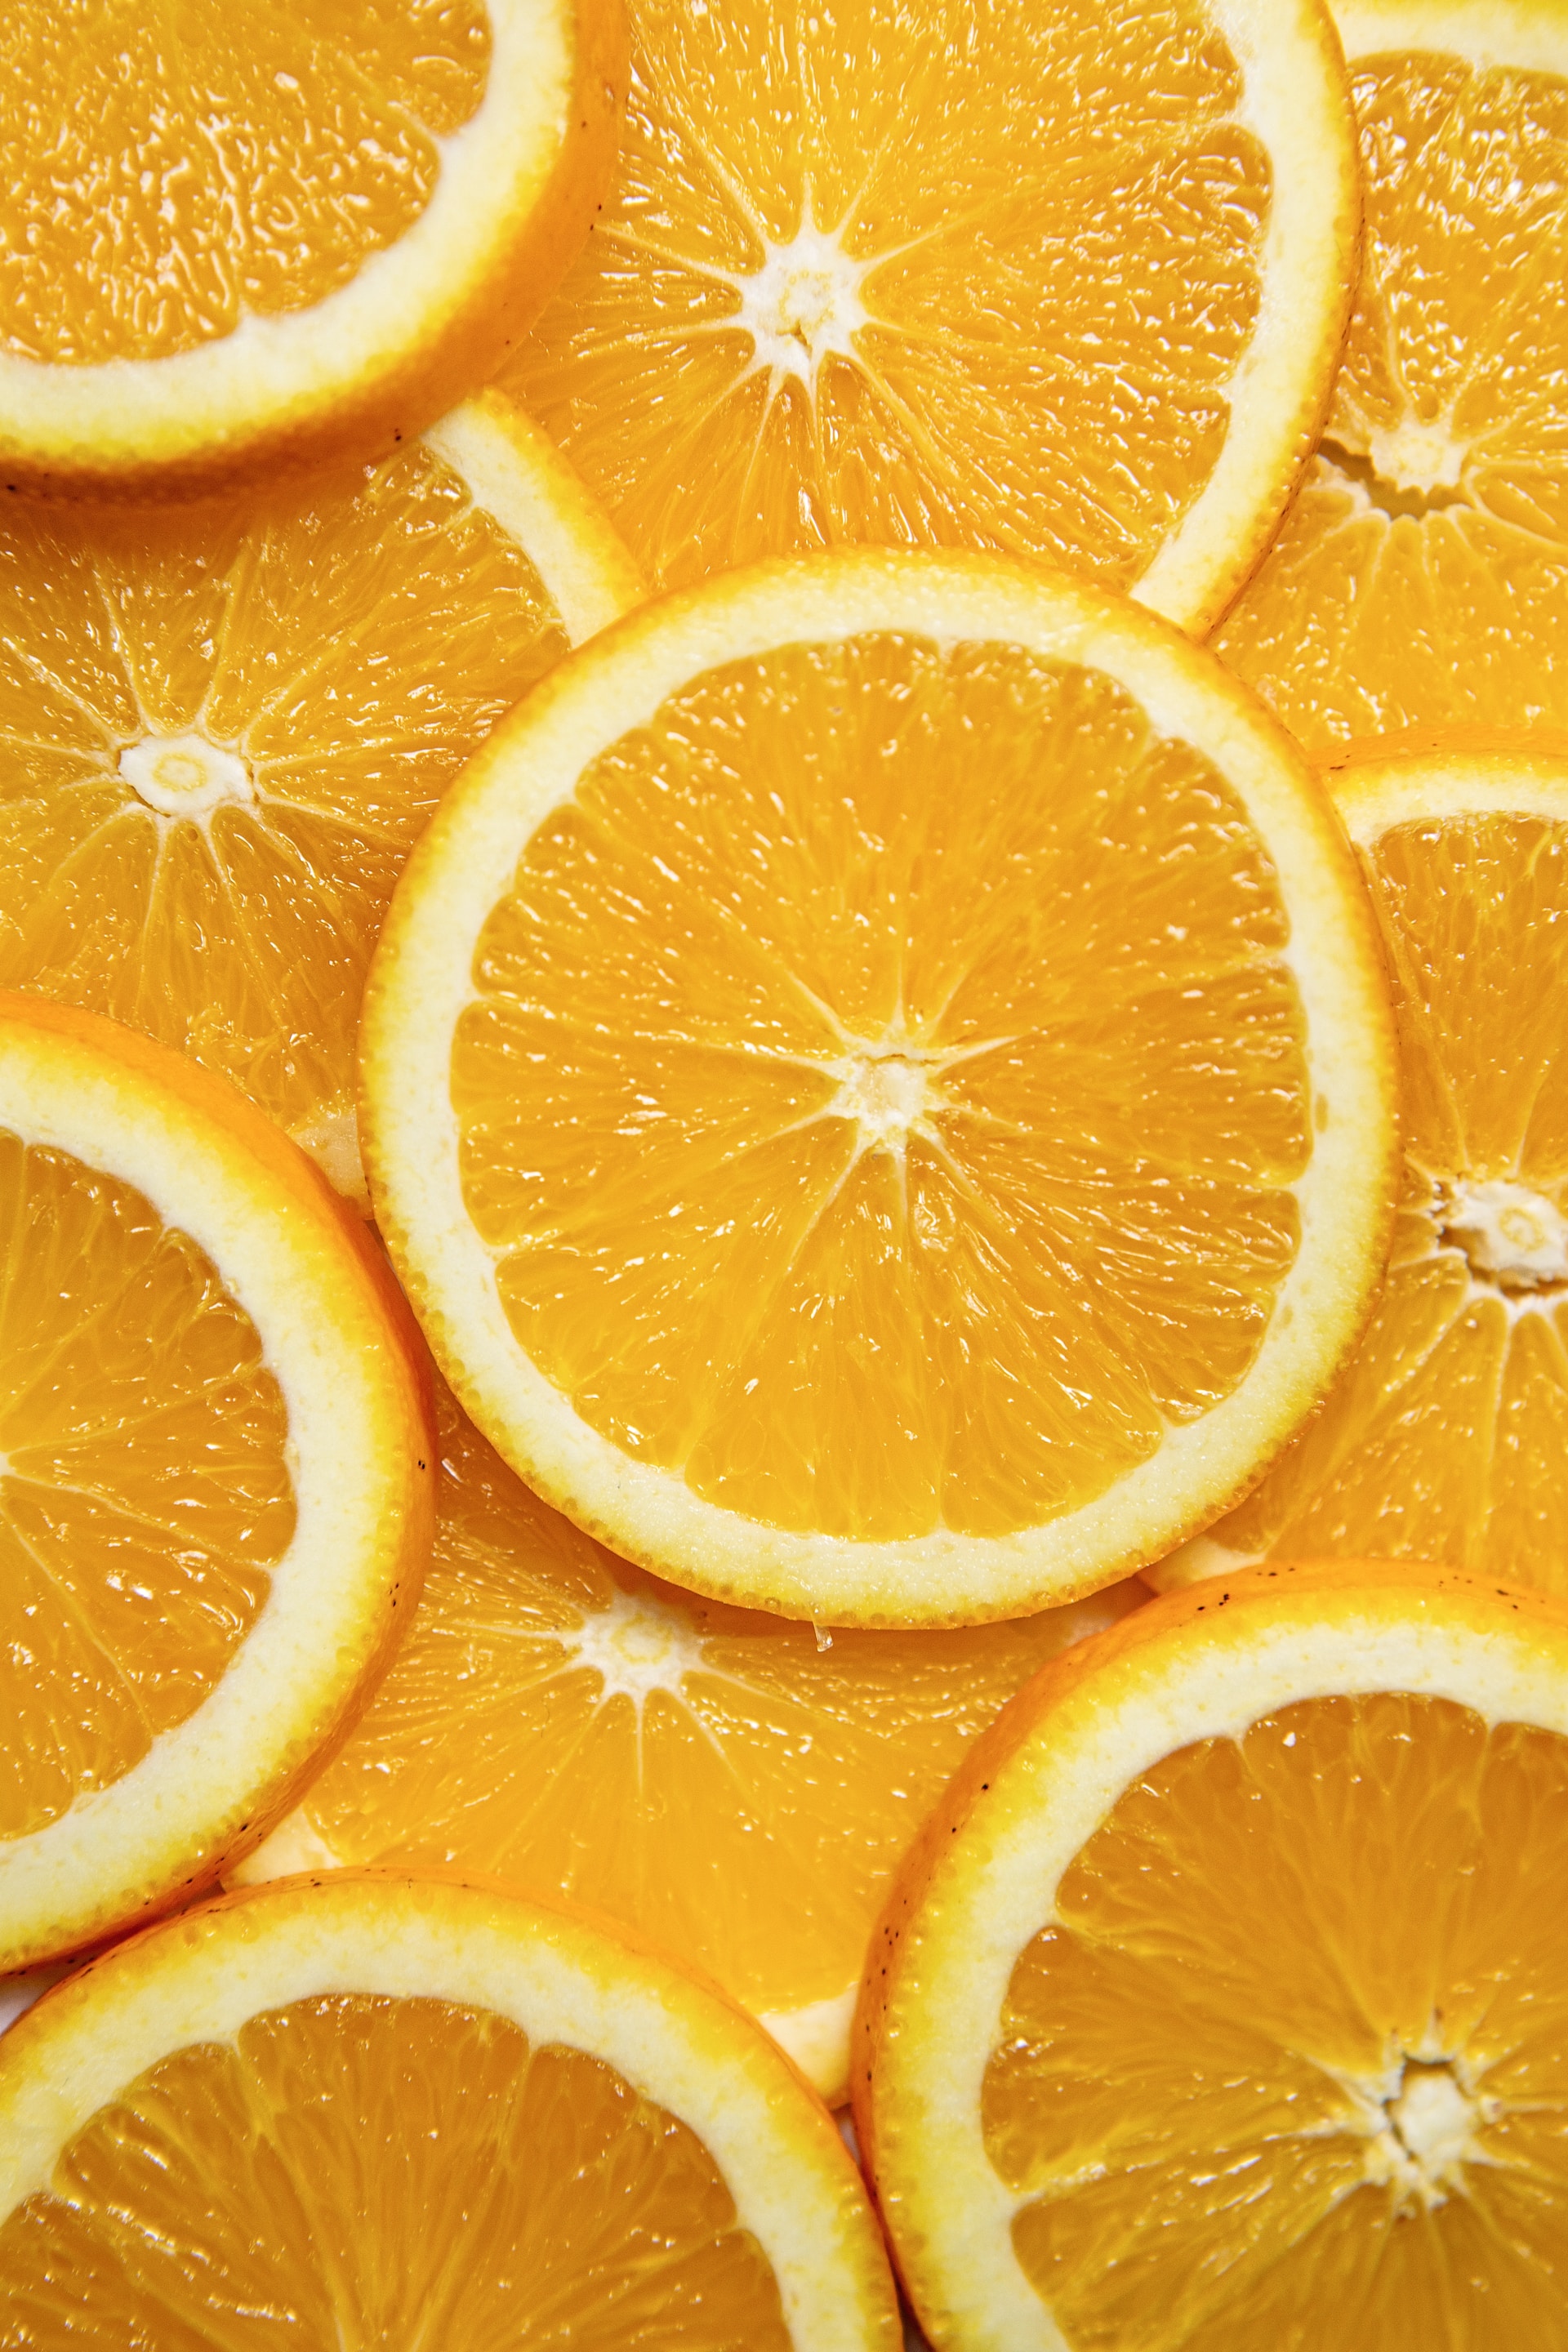 싱싱하고 맛있는 오렌지 고르는 방법